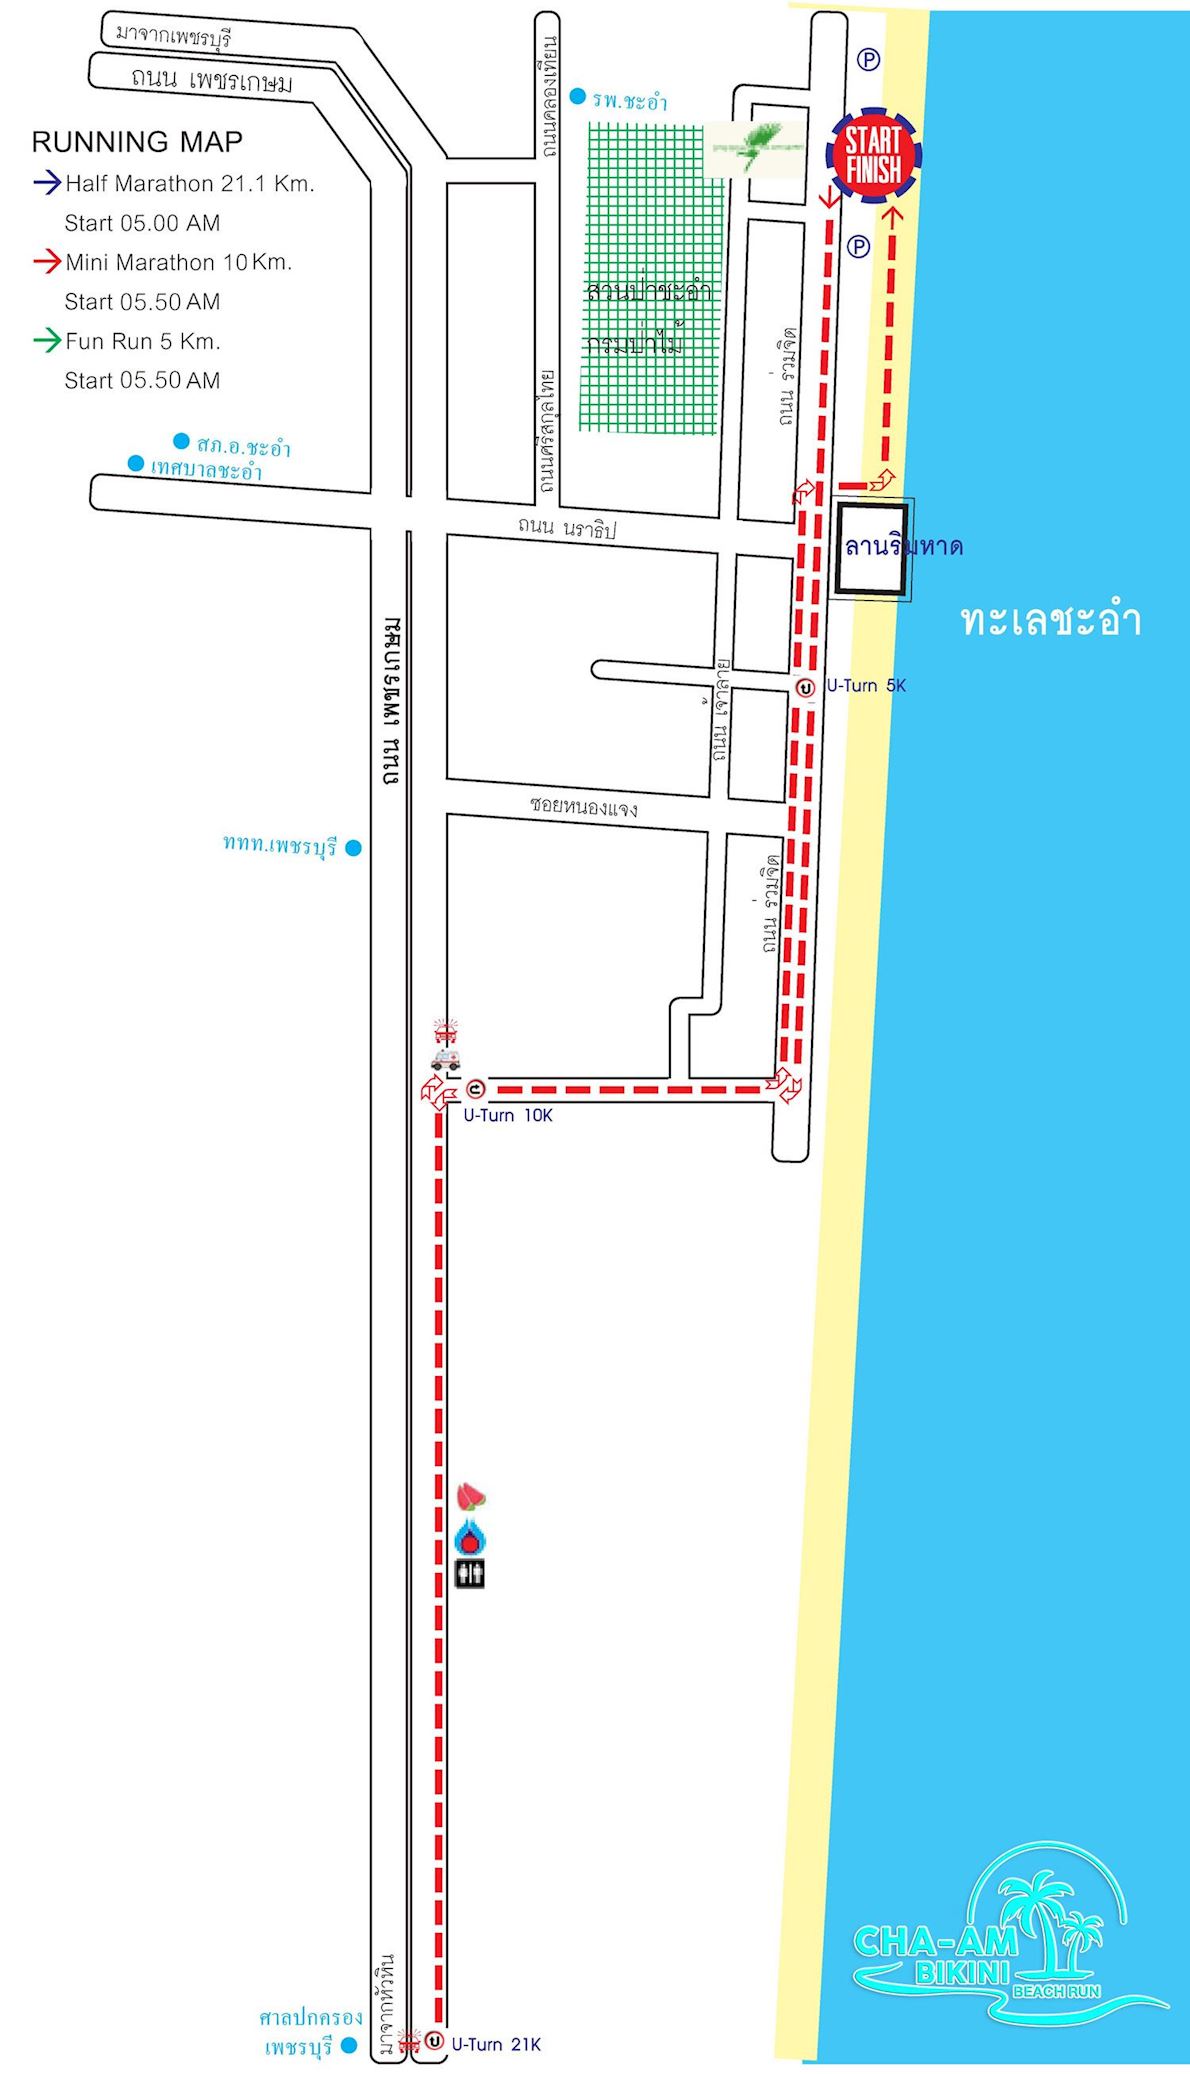 CHA-AM BIKINI BEACH RUN Mappa del percorso